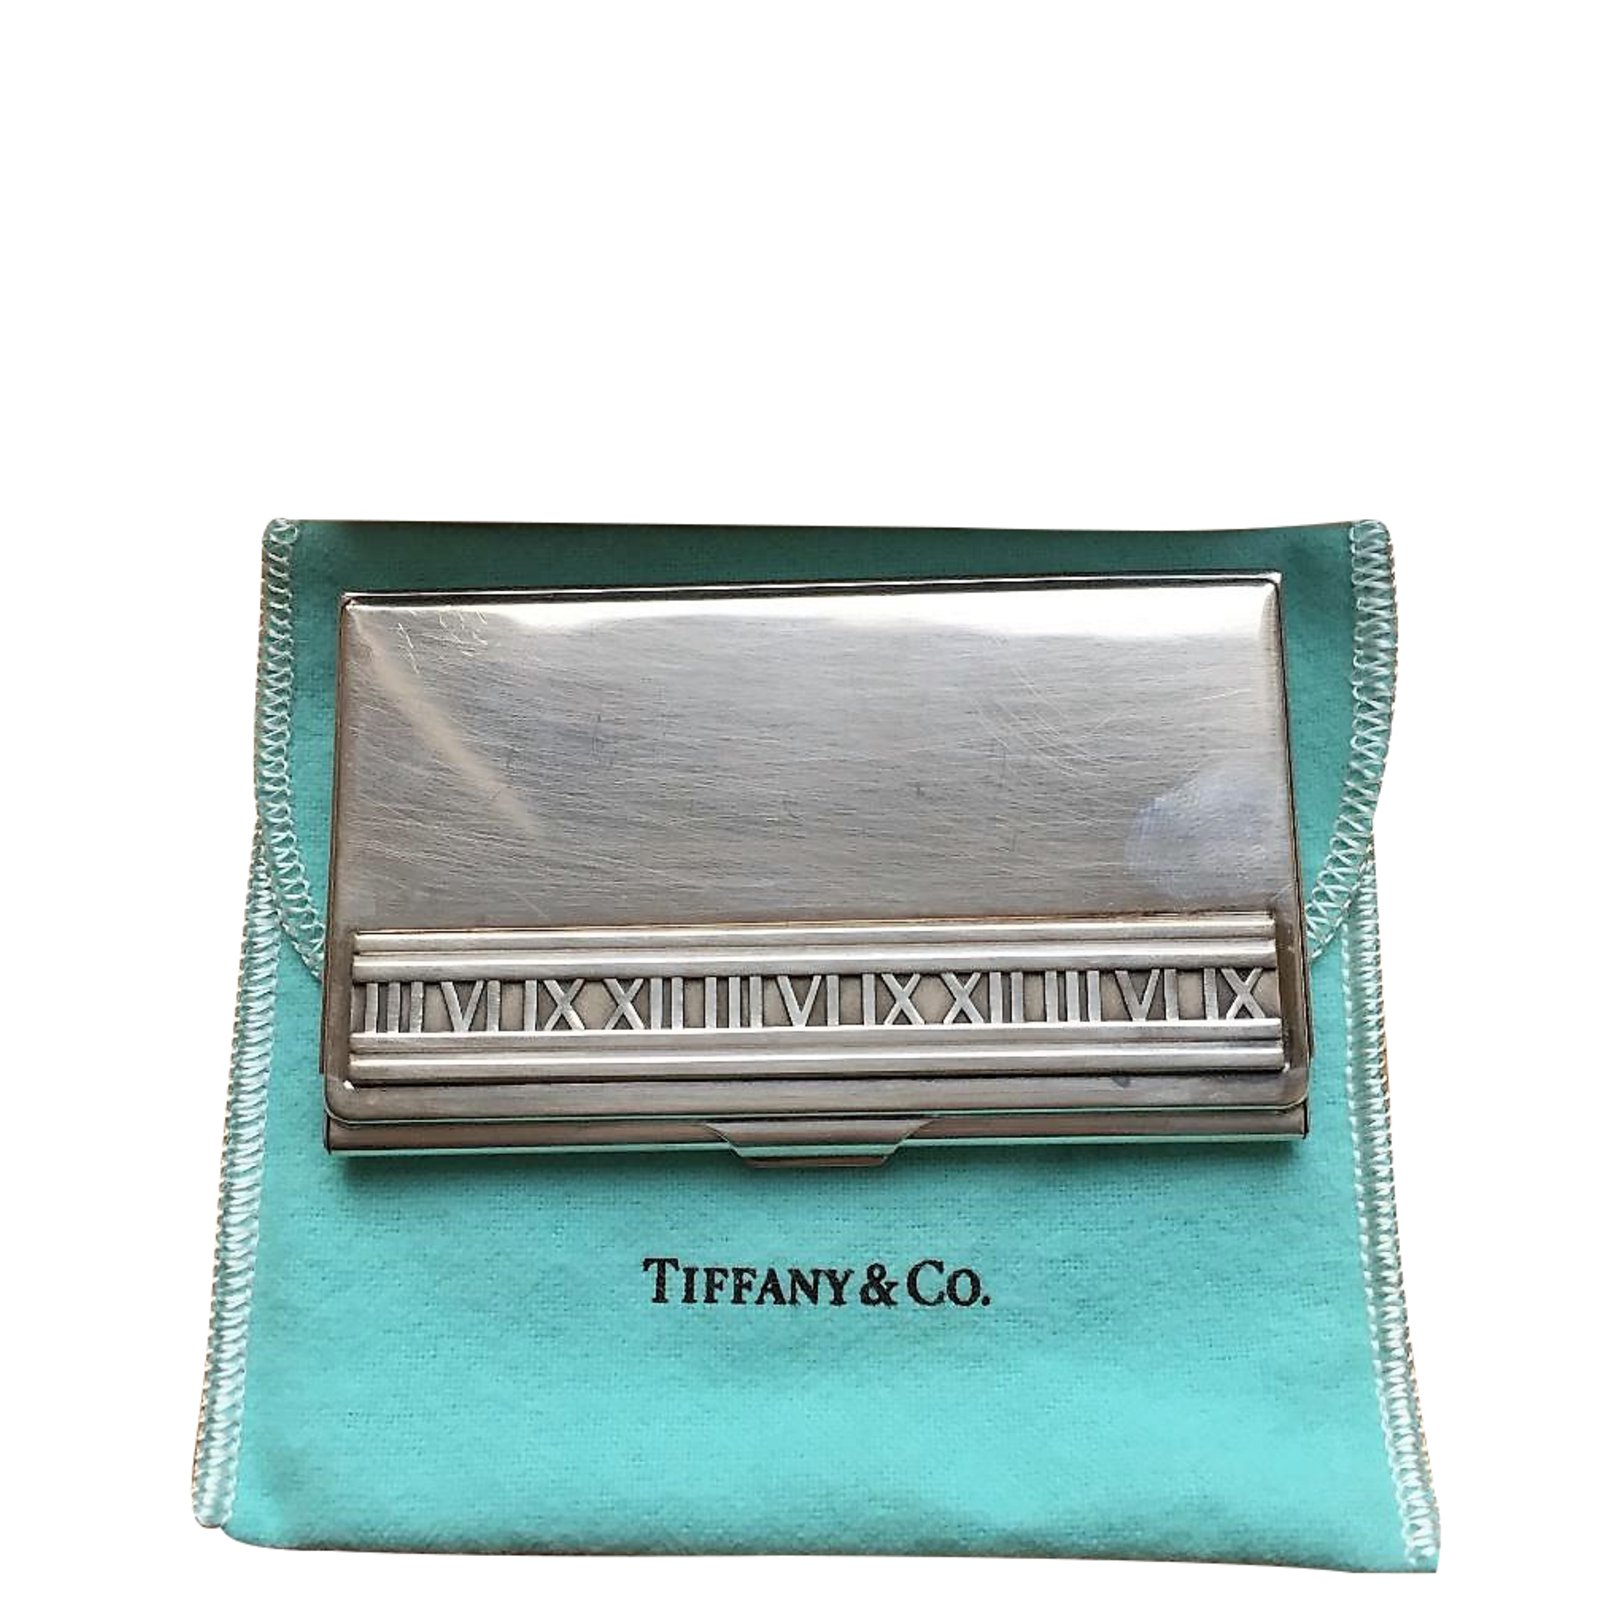 Tiffany \u0026 Co Tiffany business card 